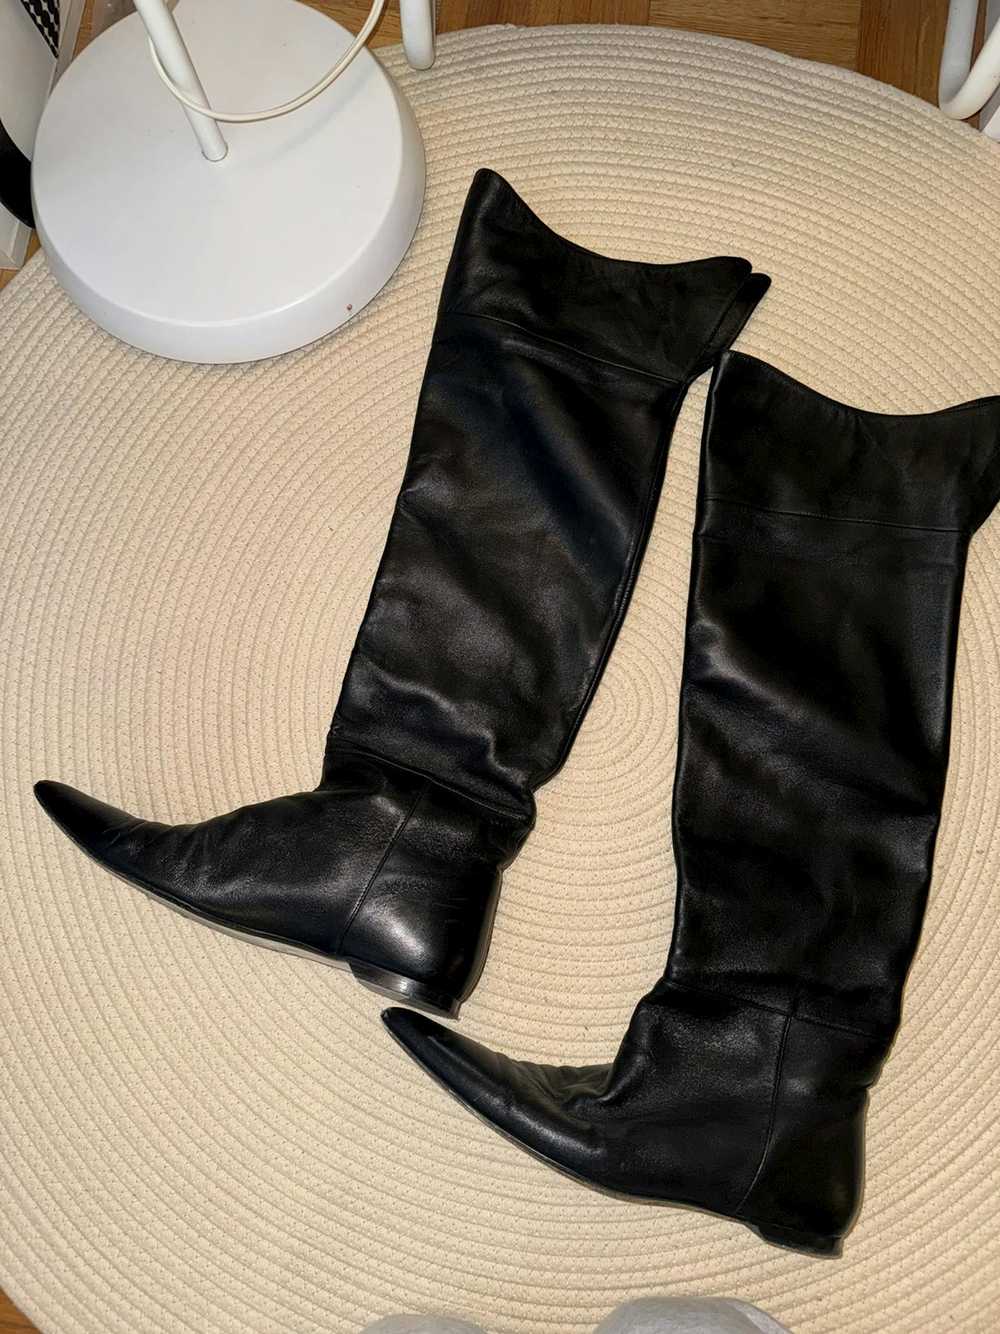 KHAITE KHAITE Diego Leather Knee Boots Size 38.5 - image 5